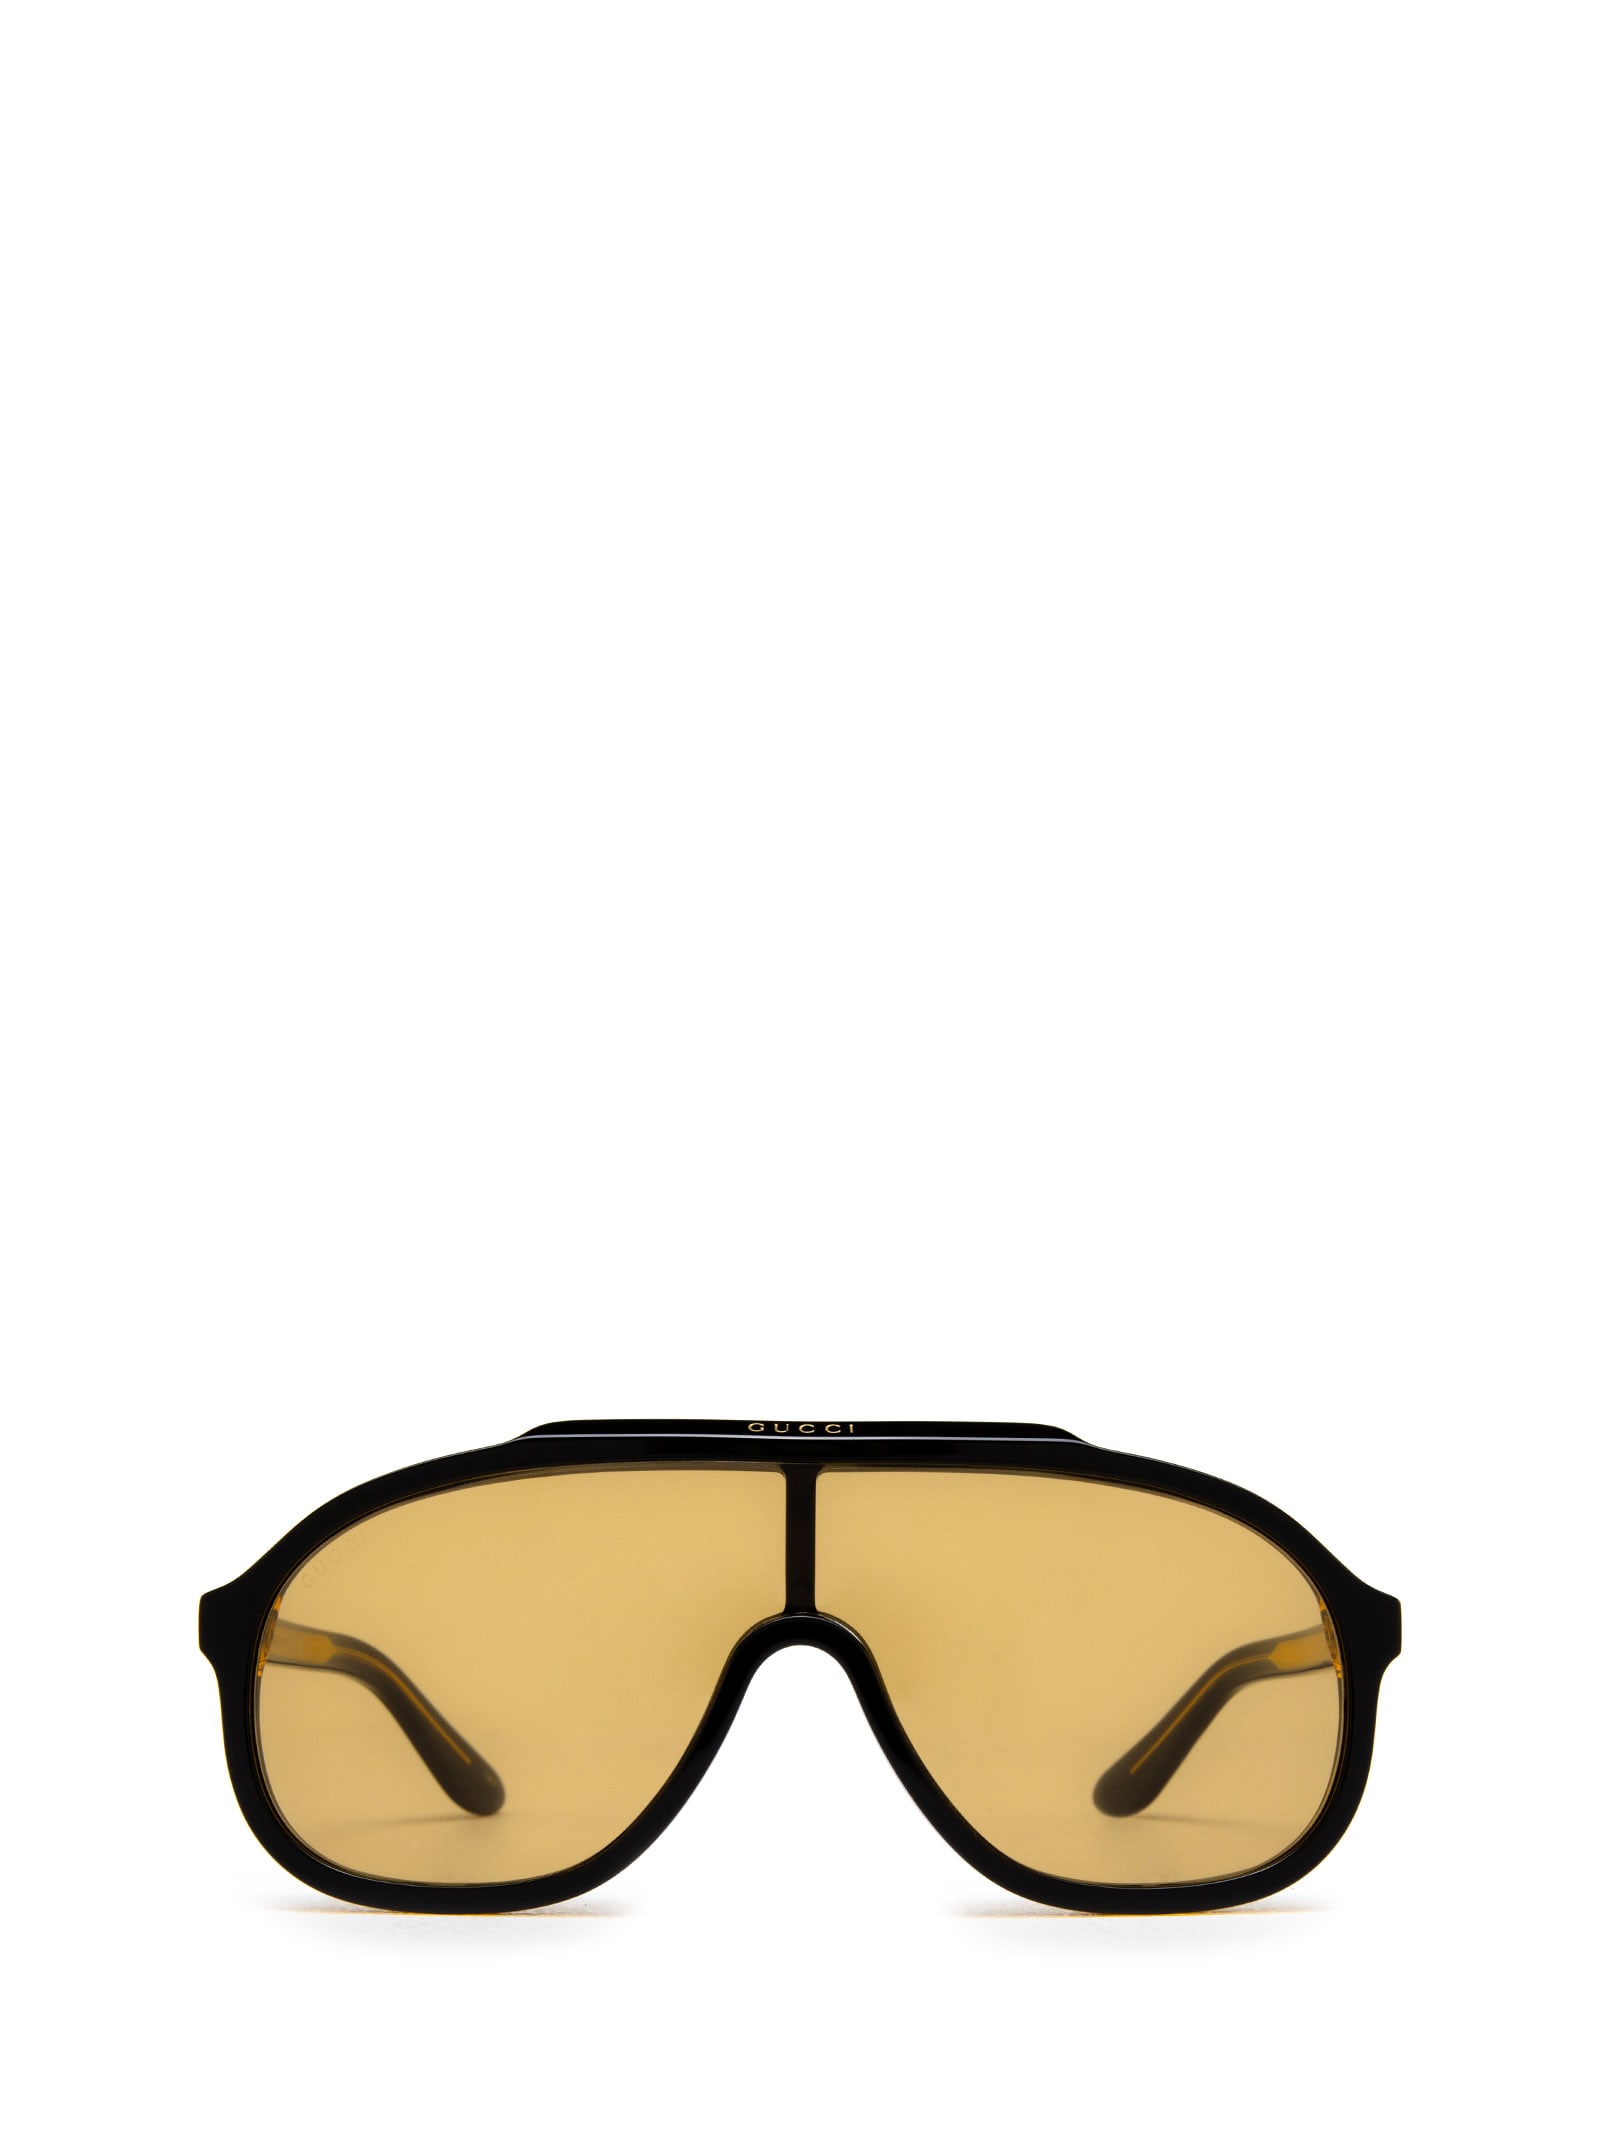 99mm Sunglasses In Black / | ModeSens